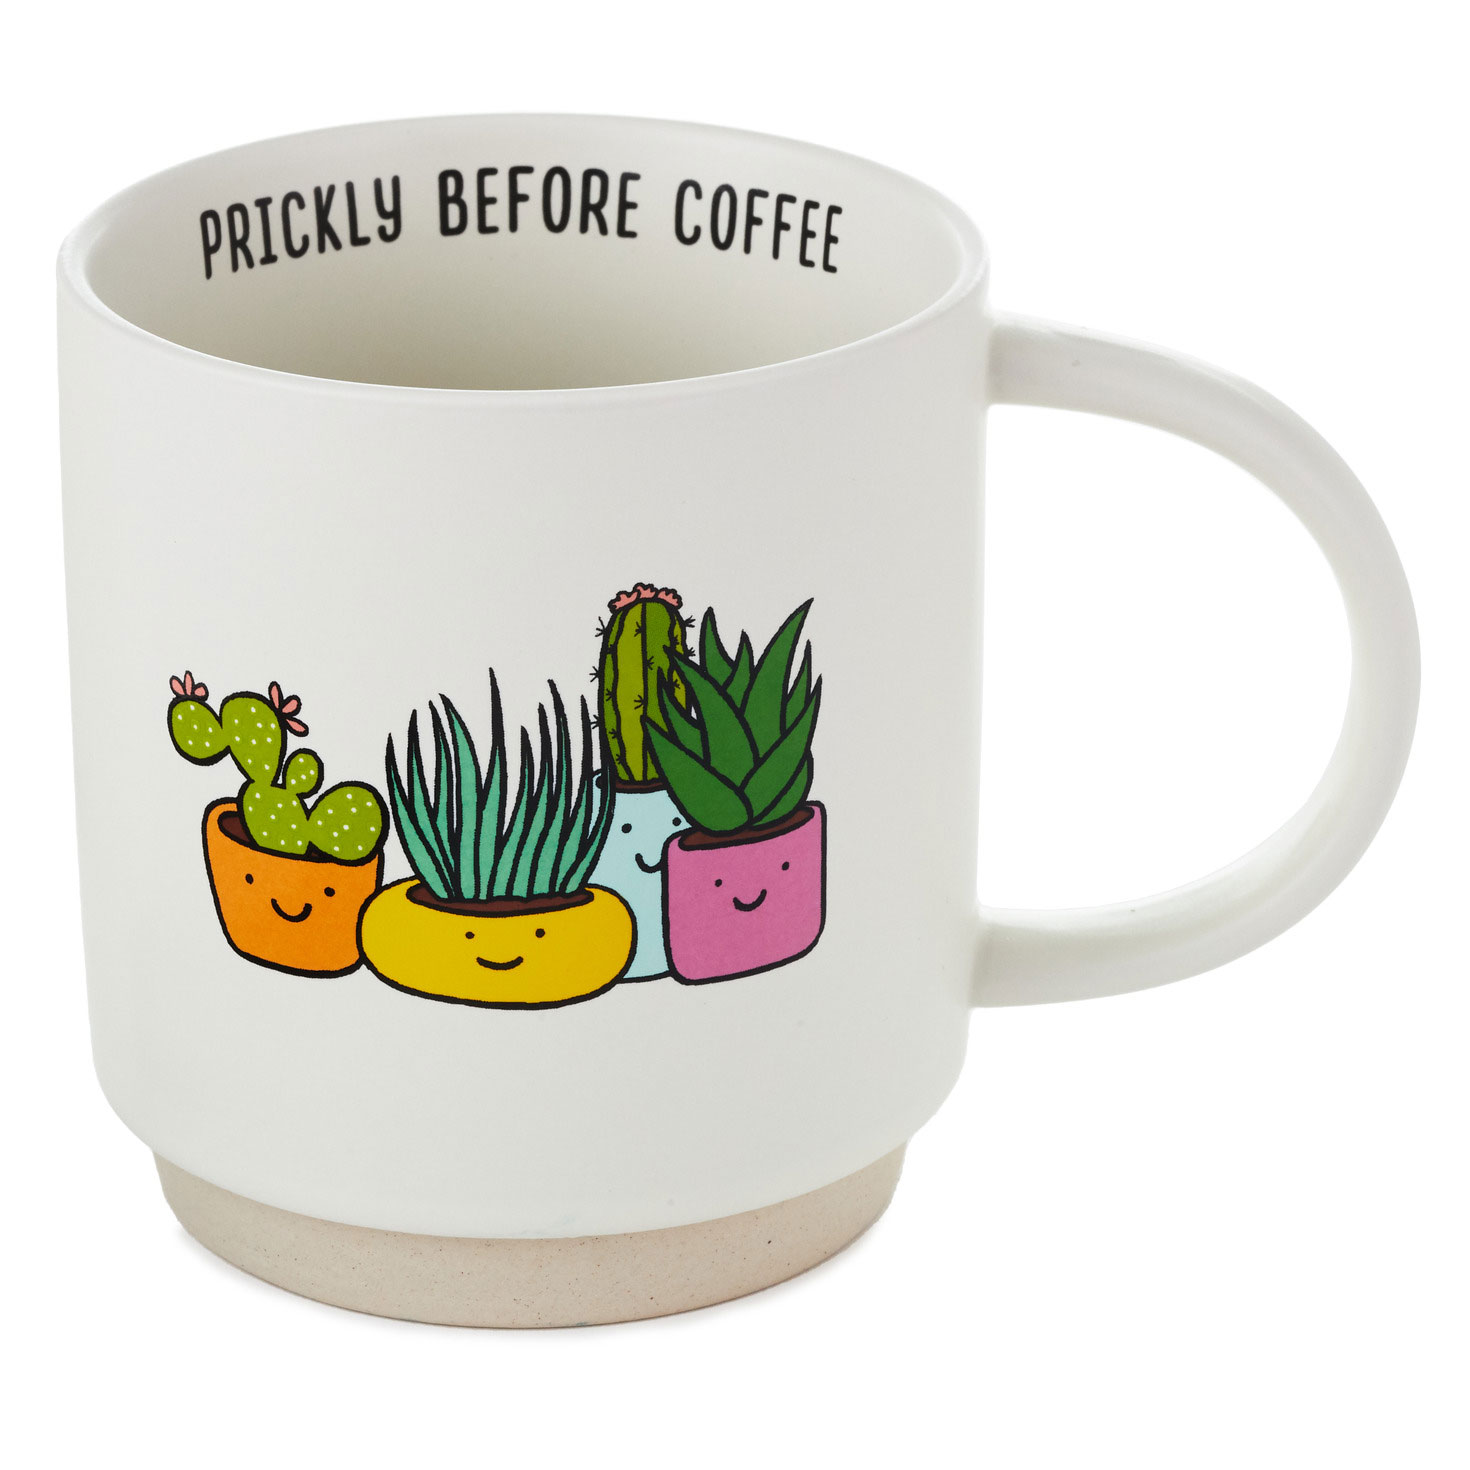 Gigantic Coffee Mug: Half gallon humorous mug